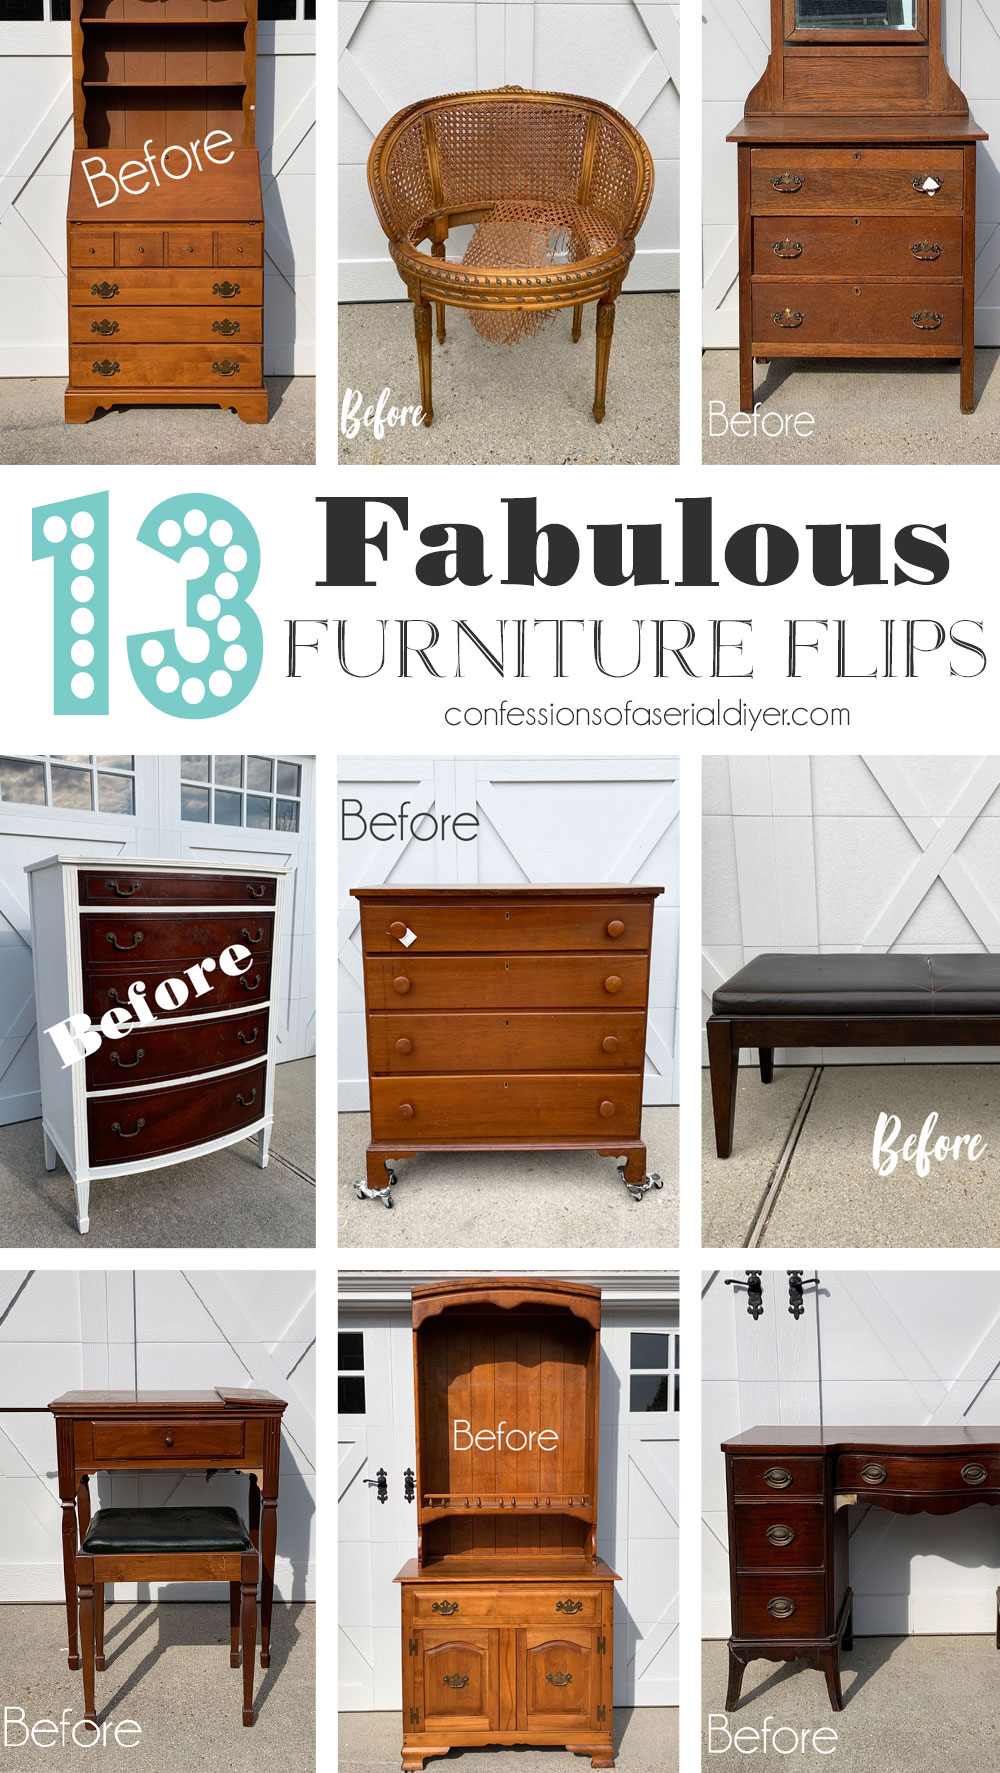 Fabulous furniture flips